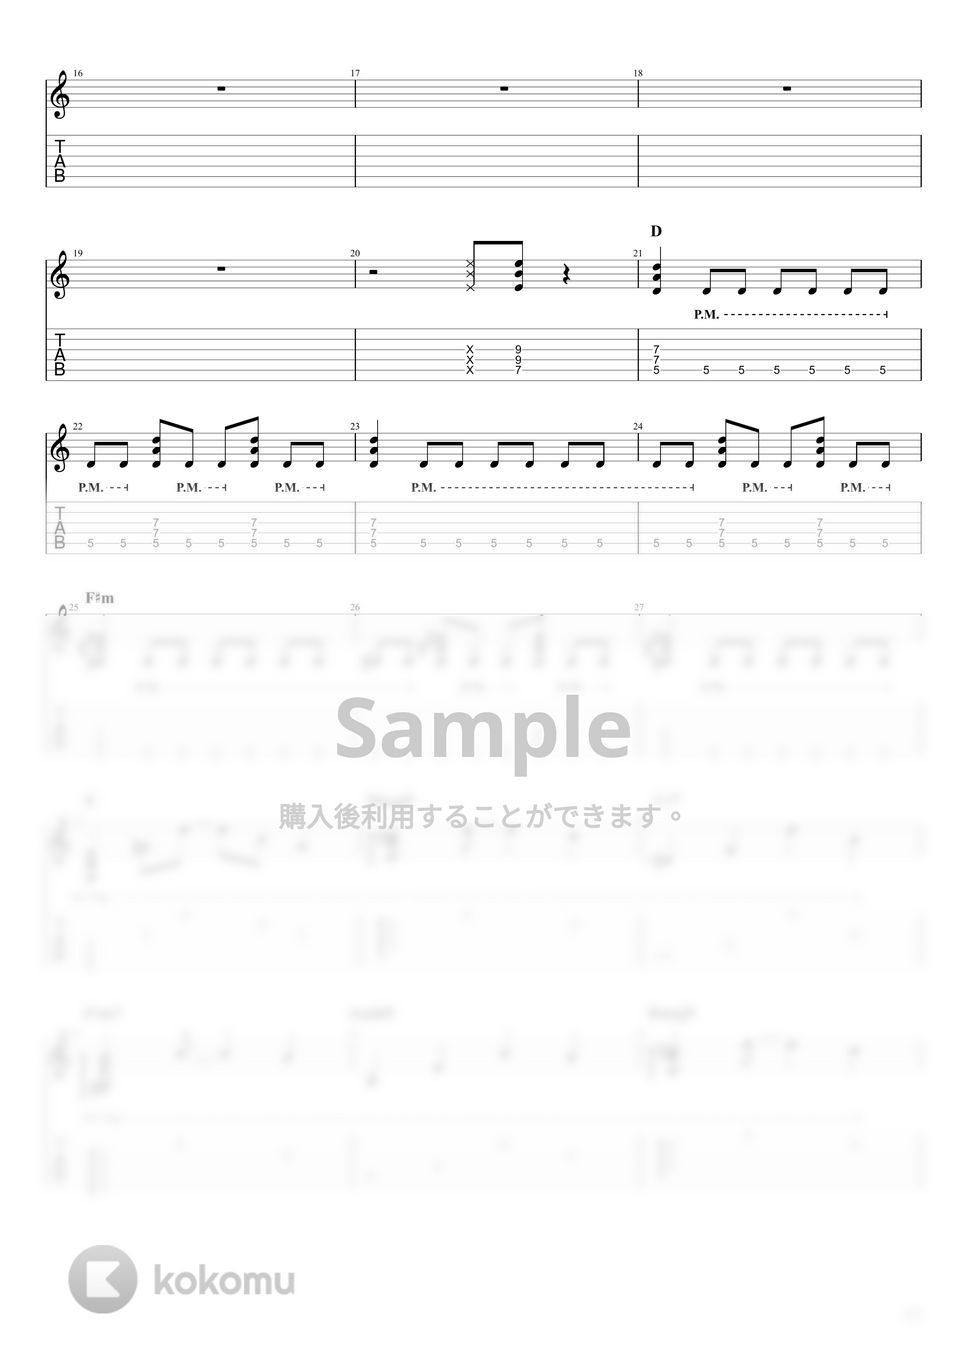 結束バンド - ギターと孤独と蒼い惑星 LIVE at STARRY (喜多郁代Part) by キリギリス